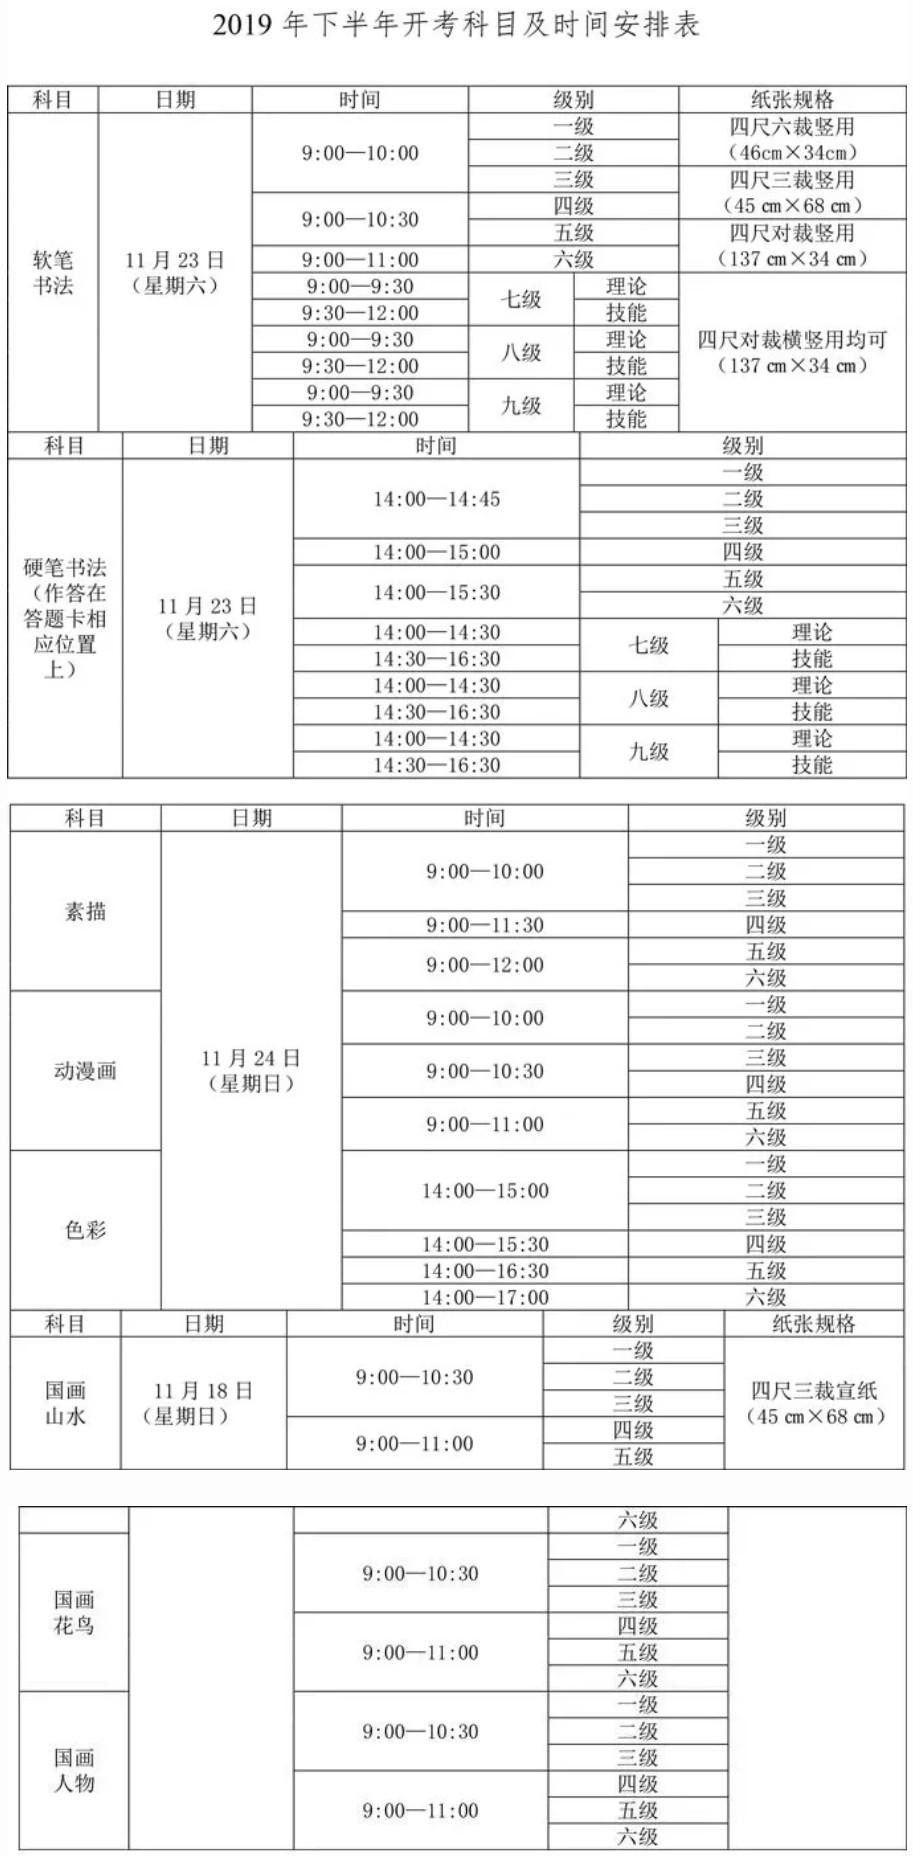 2019四川省下半年书画等级考试报考公告（中国教育考试网）